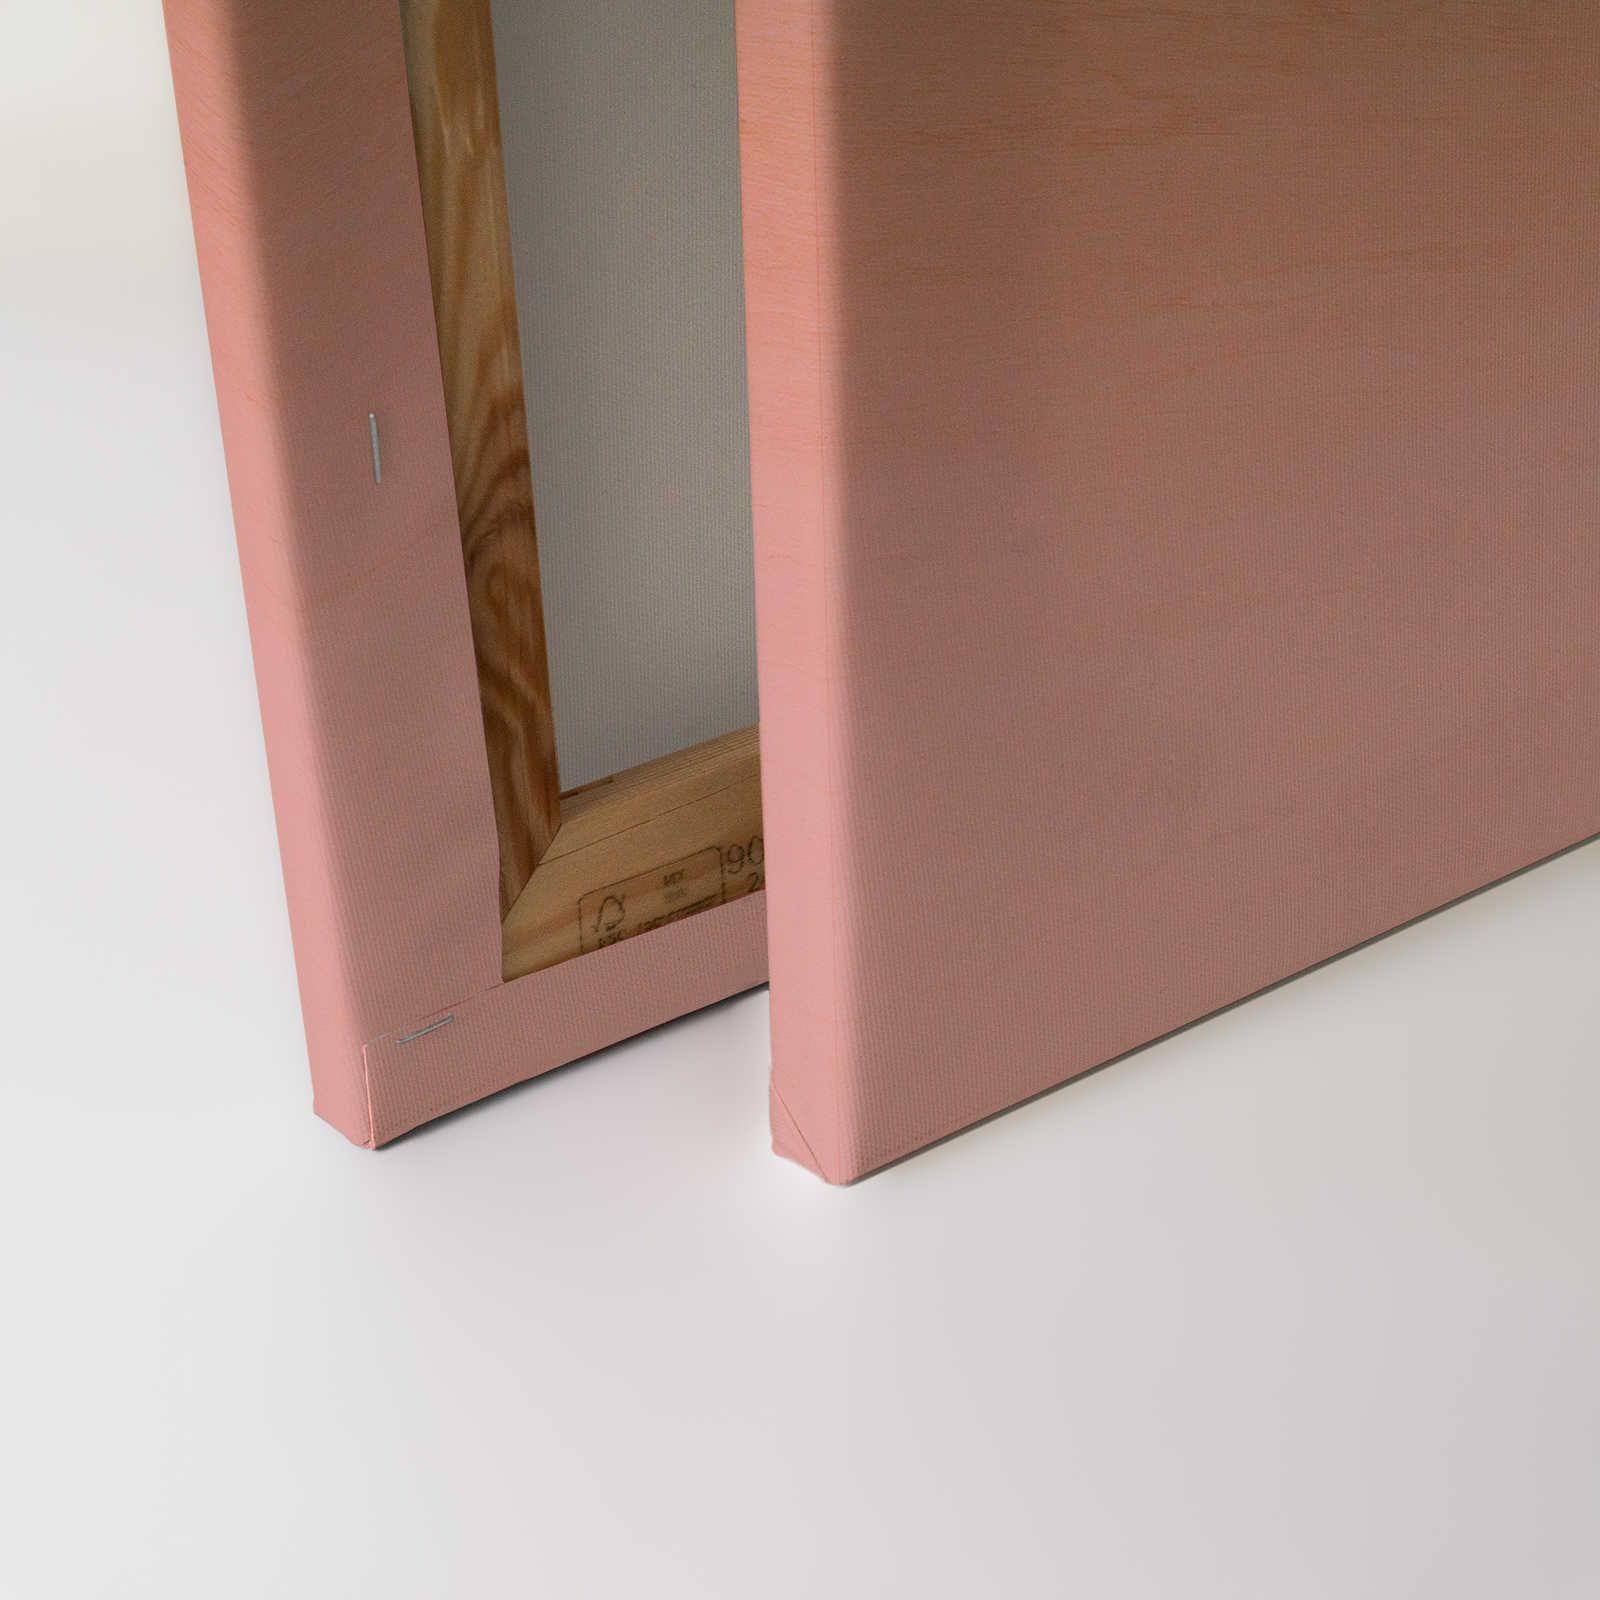             Laboratorio 2 - Pittura su tela Effetto Ombre rosa e venature del legno - 0,90 m x 0,60 m
        